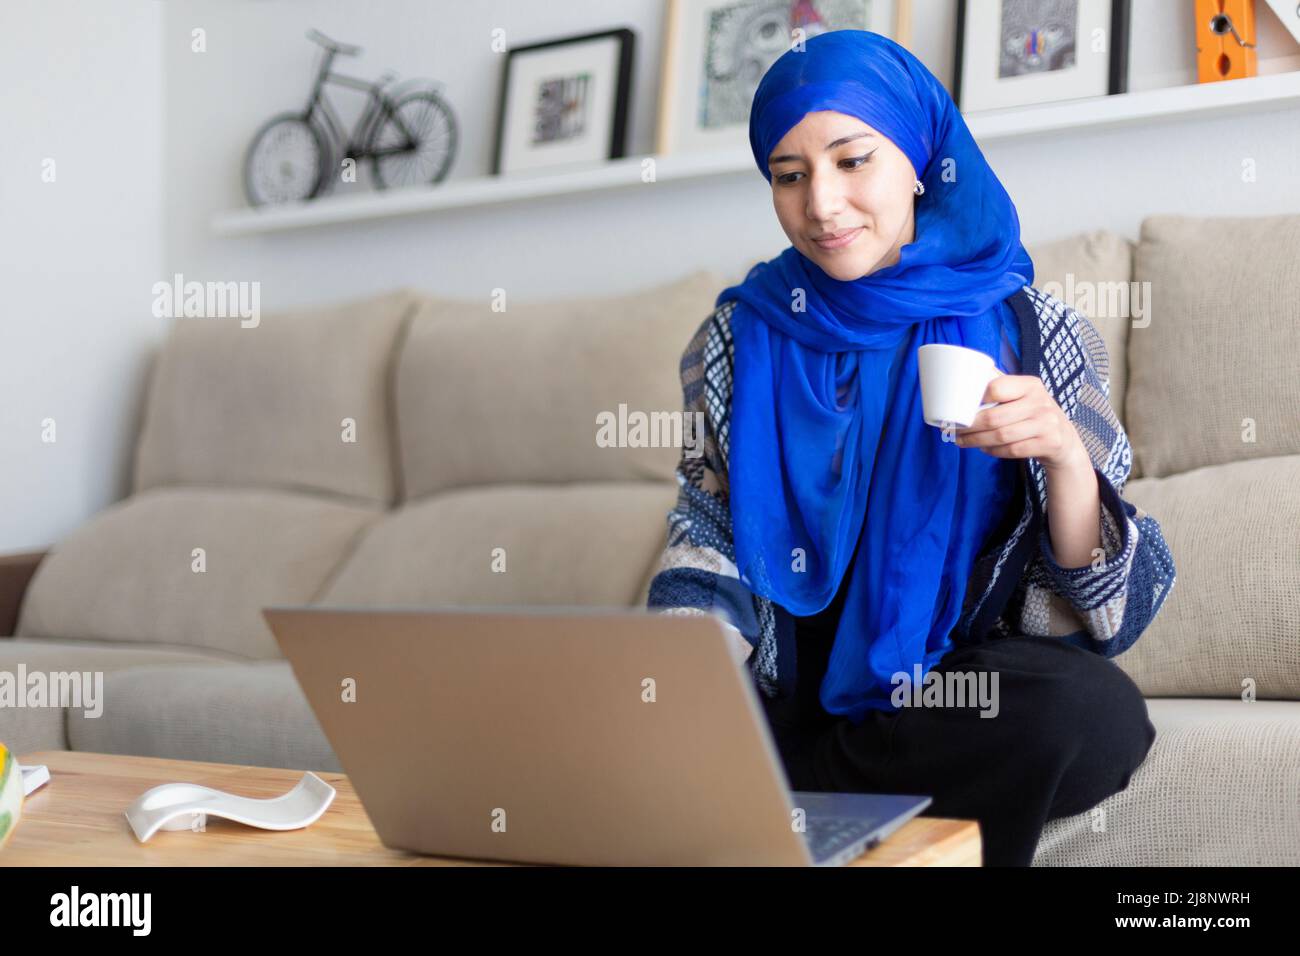 Jeune femme musulmane utilisant son ordinateur portable. Travailler à domicile, étudier en ligne, naviguer sur Internet. Espace pour le texte. Banque D'Images